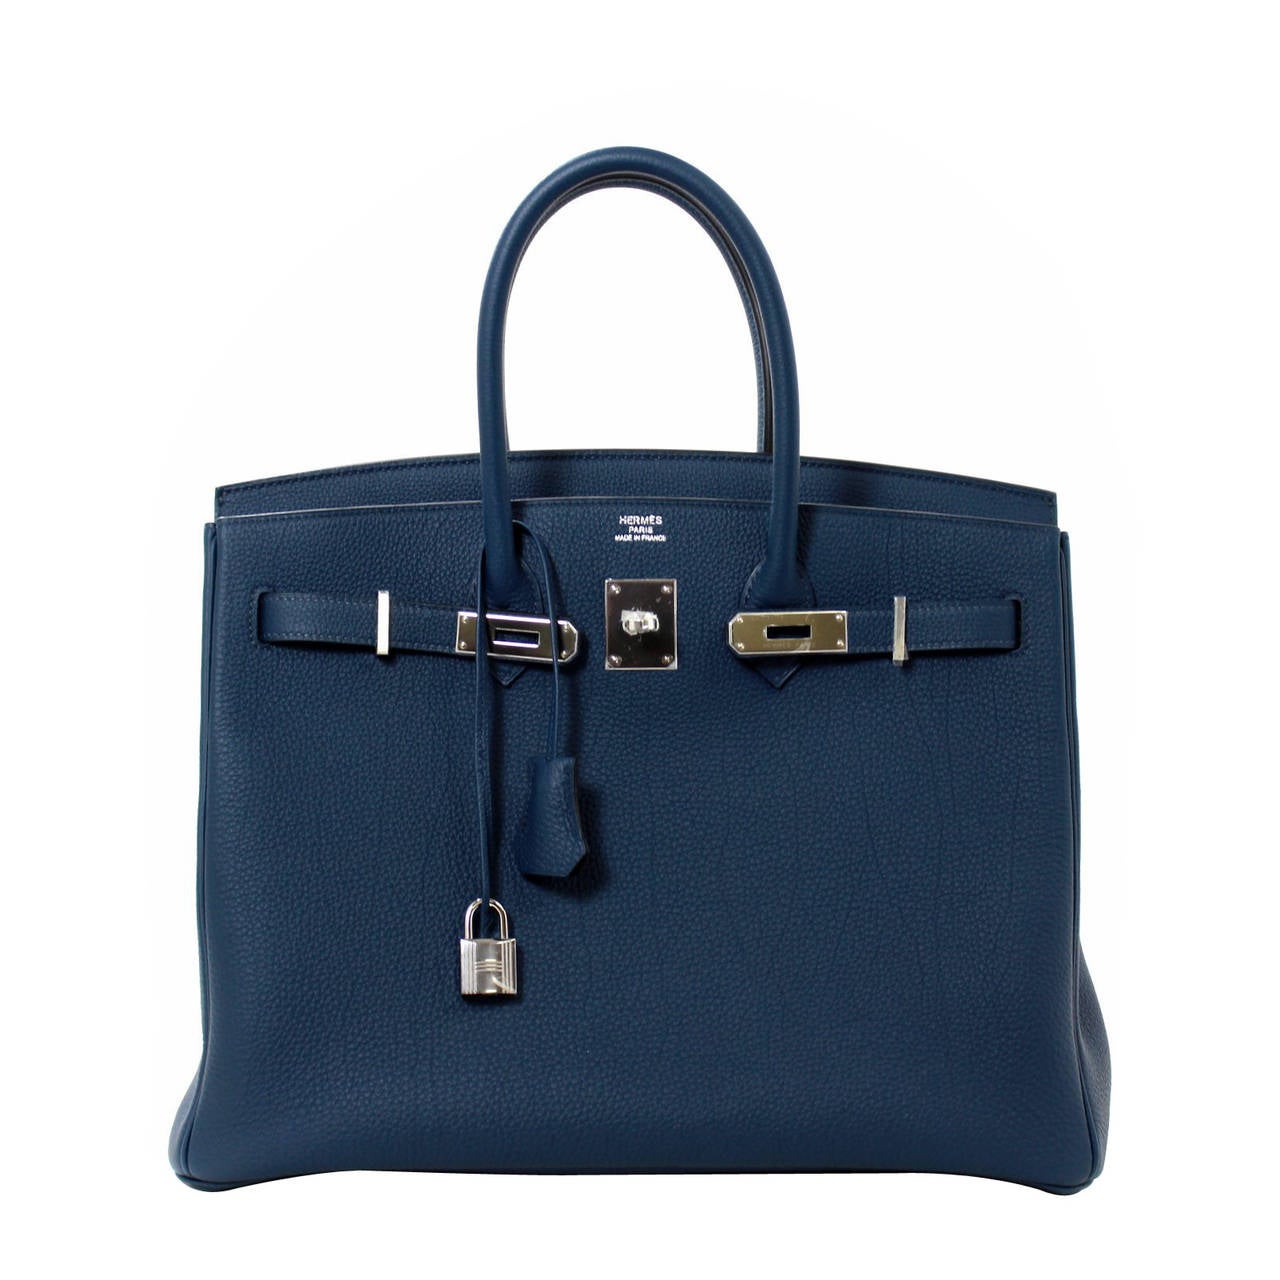 Hermes 35 cm Blue de Prusse Birkin Bag- Togo with PHW